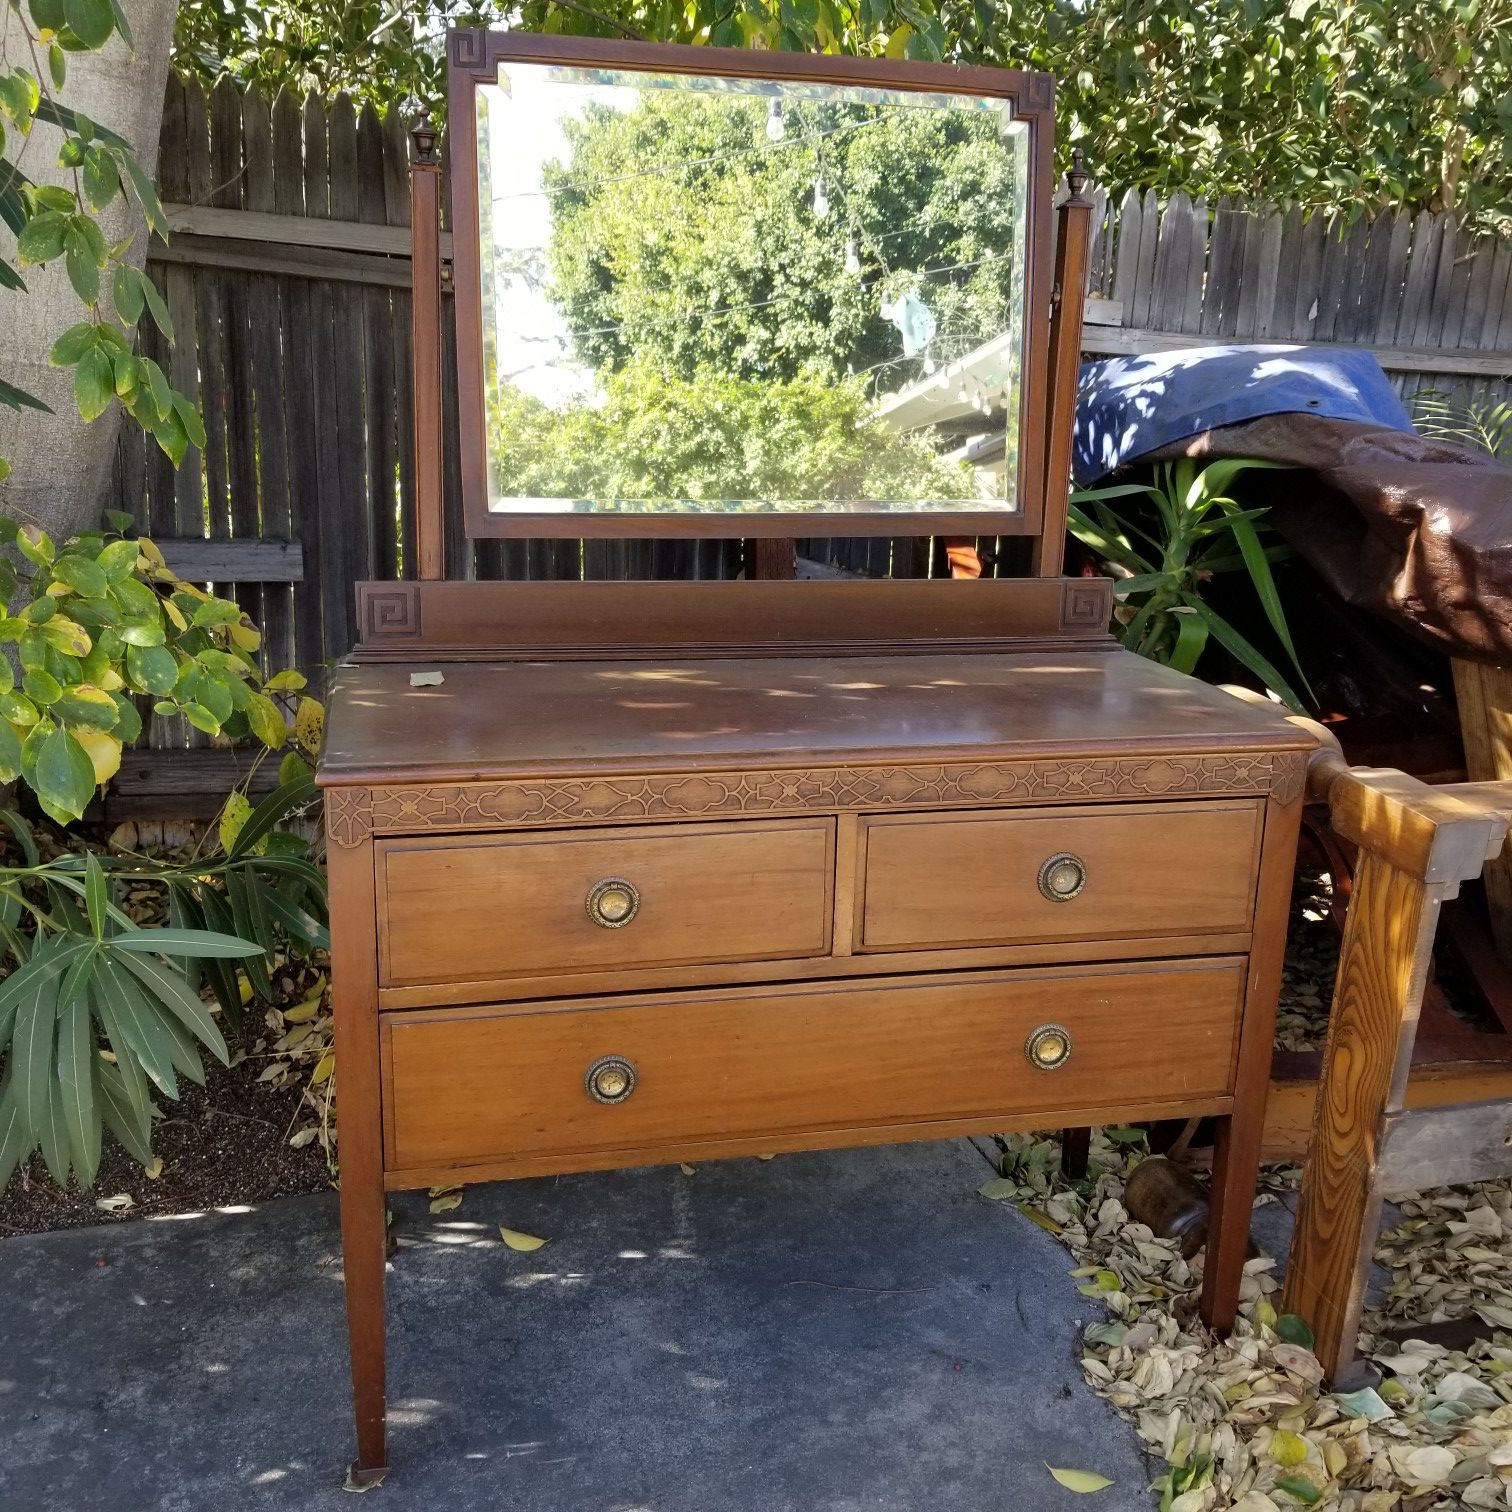 Antique wooden dresser